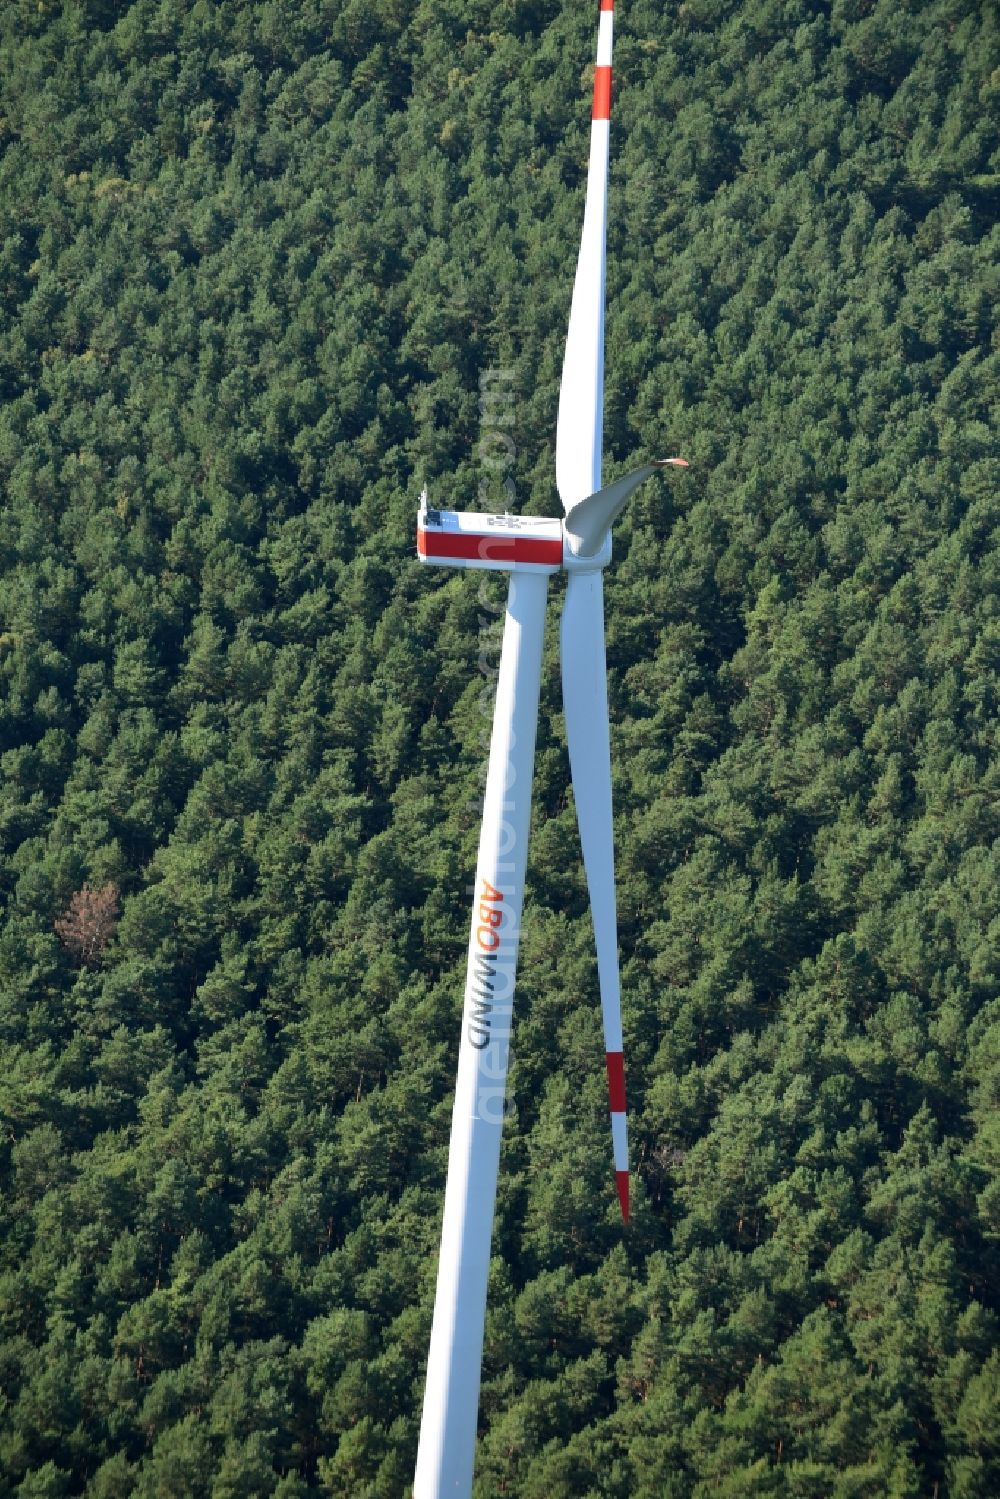 Spreenhagen from the bird's eye view: Wind turbine wind power plant of ABO Wind AG in Spreenhagen in Brandenburg